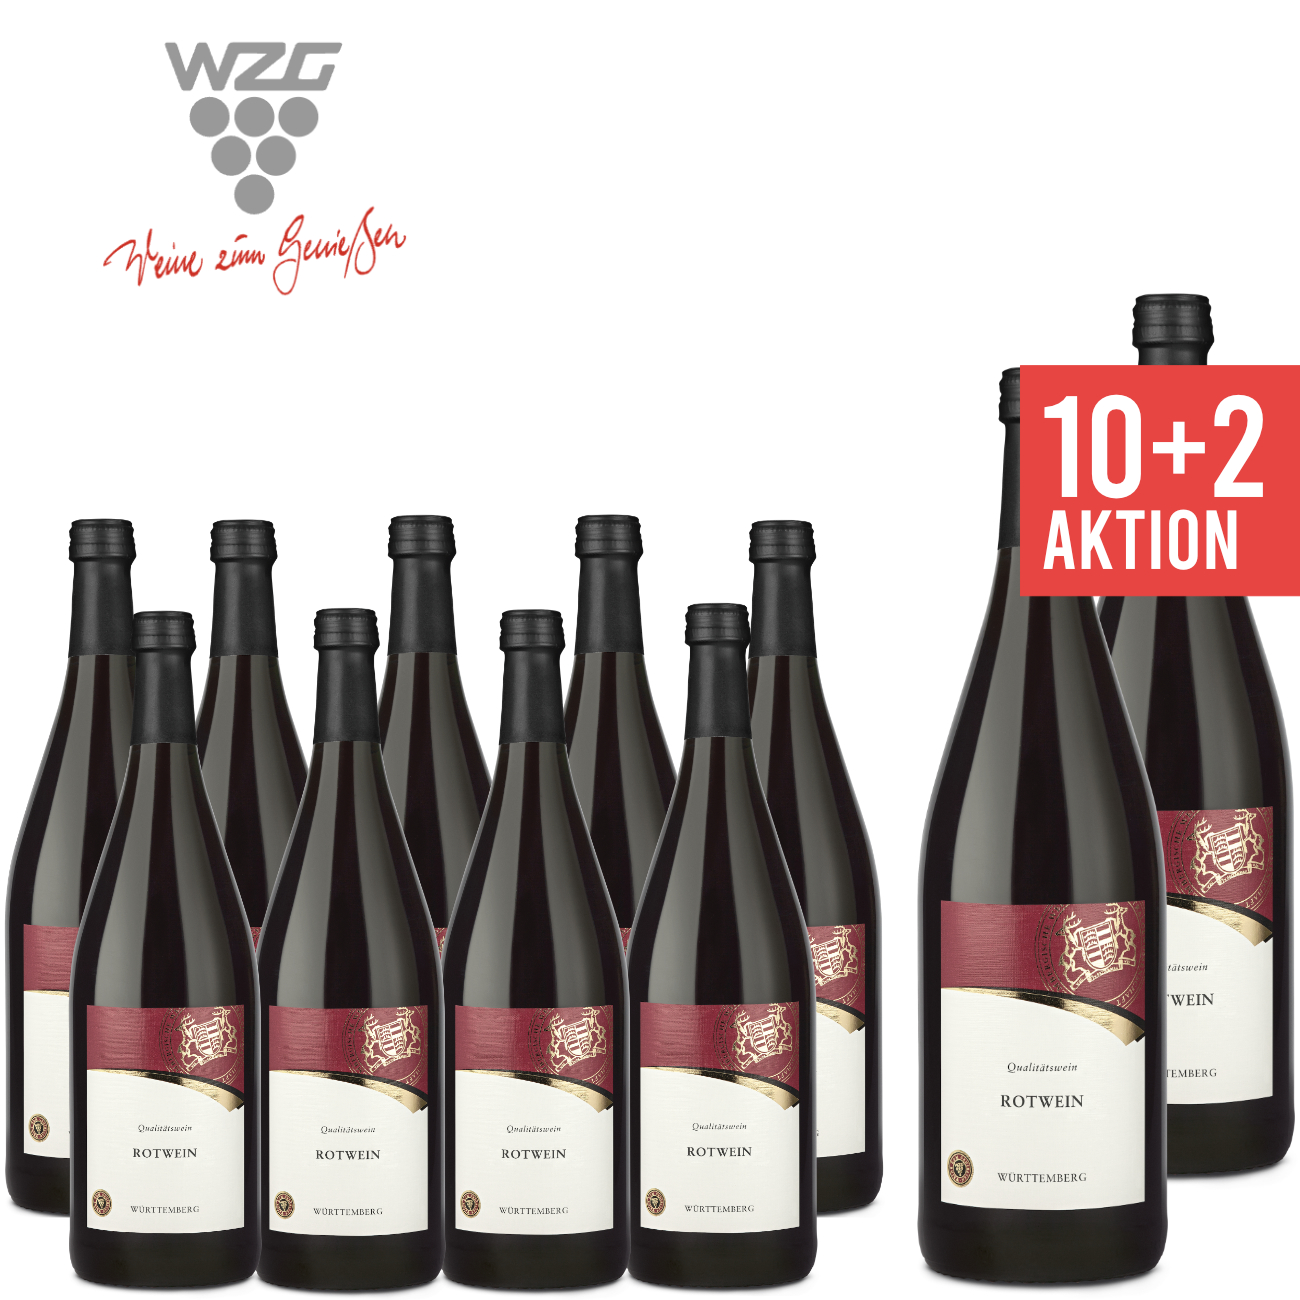 WZG Möglingen 10+2 Rotwein Württemberg 1,0 L - Angebot, Qualitätswein, halbtrocken, günstige Literflasche, 1-Liter, Württemberger Wein